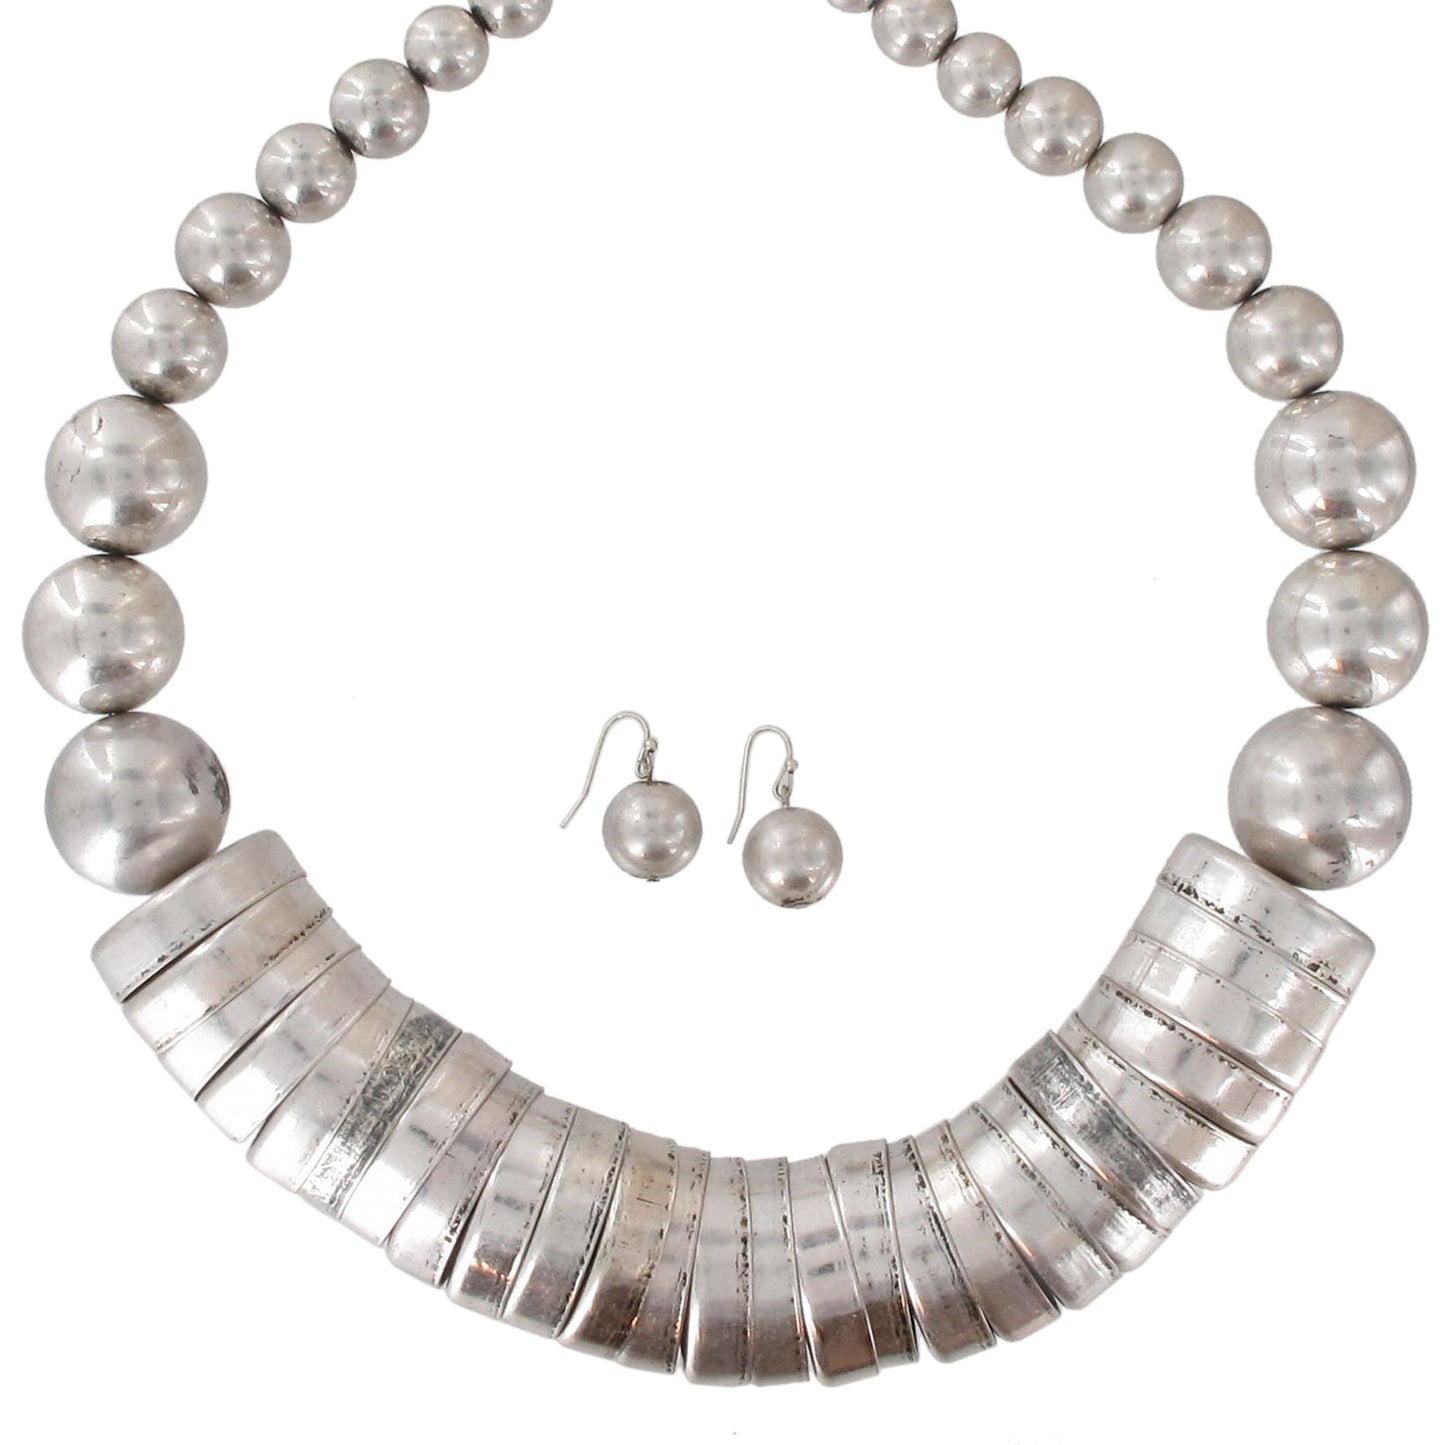 Dangle Pierced Earrings 1/2" + Statement Silver Tone Beaded Necklace 23" Set